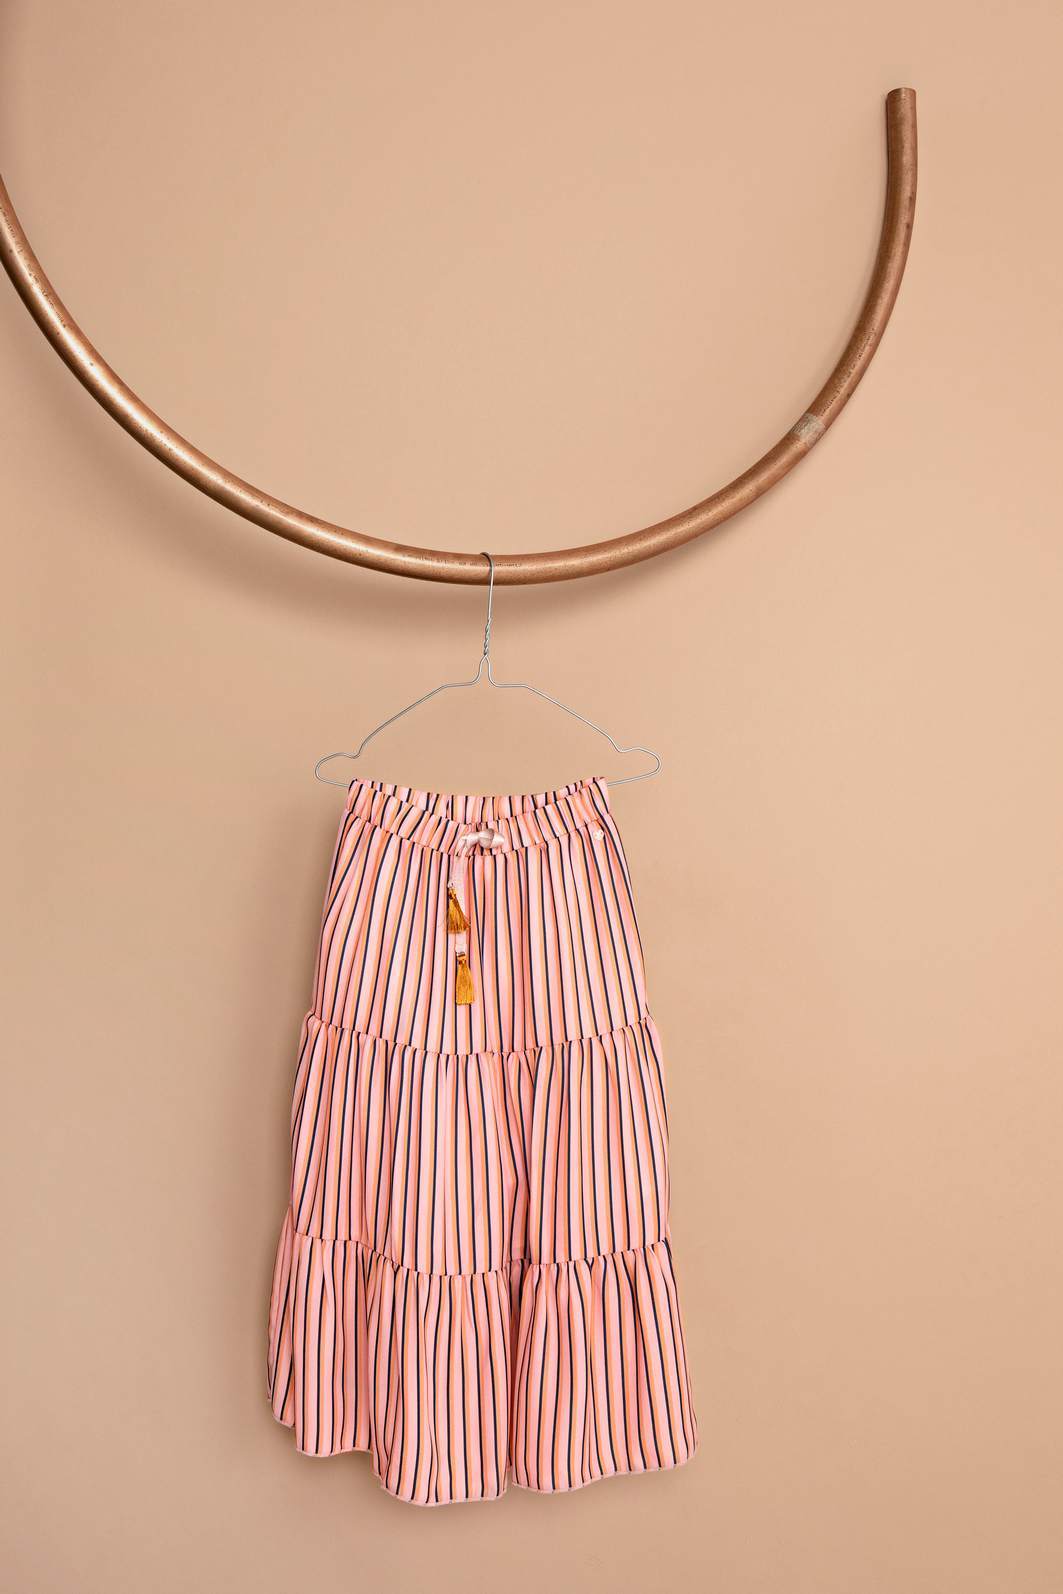 Meisjes NaelB maxi skirt AOP stripe van NoNo in de kleur Lychee in maat 146/152.